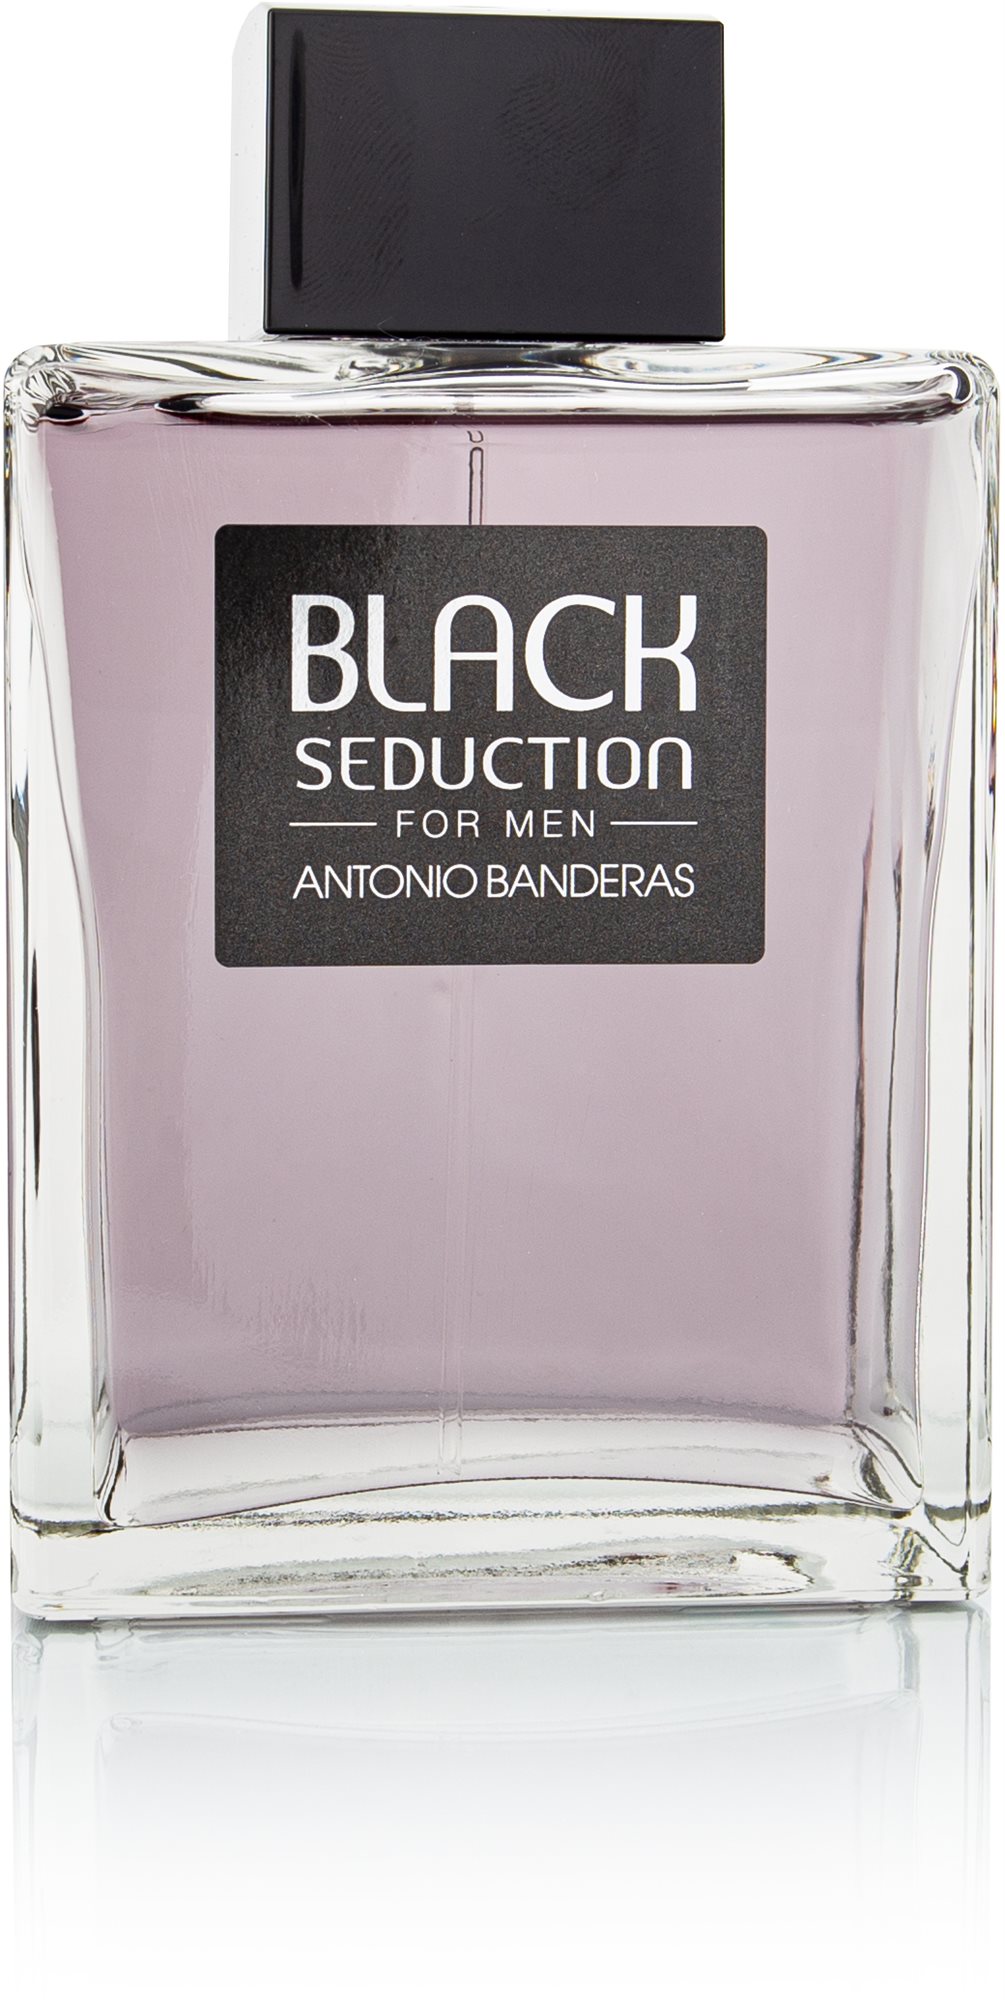 ANTONIO BANDERAS Seduction In Black EdT 200 ml